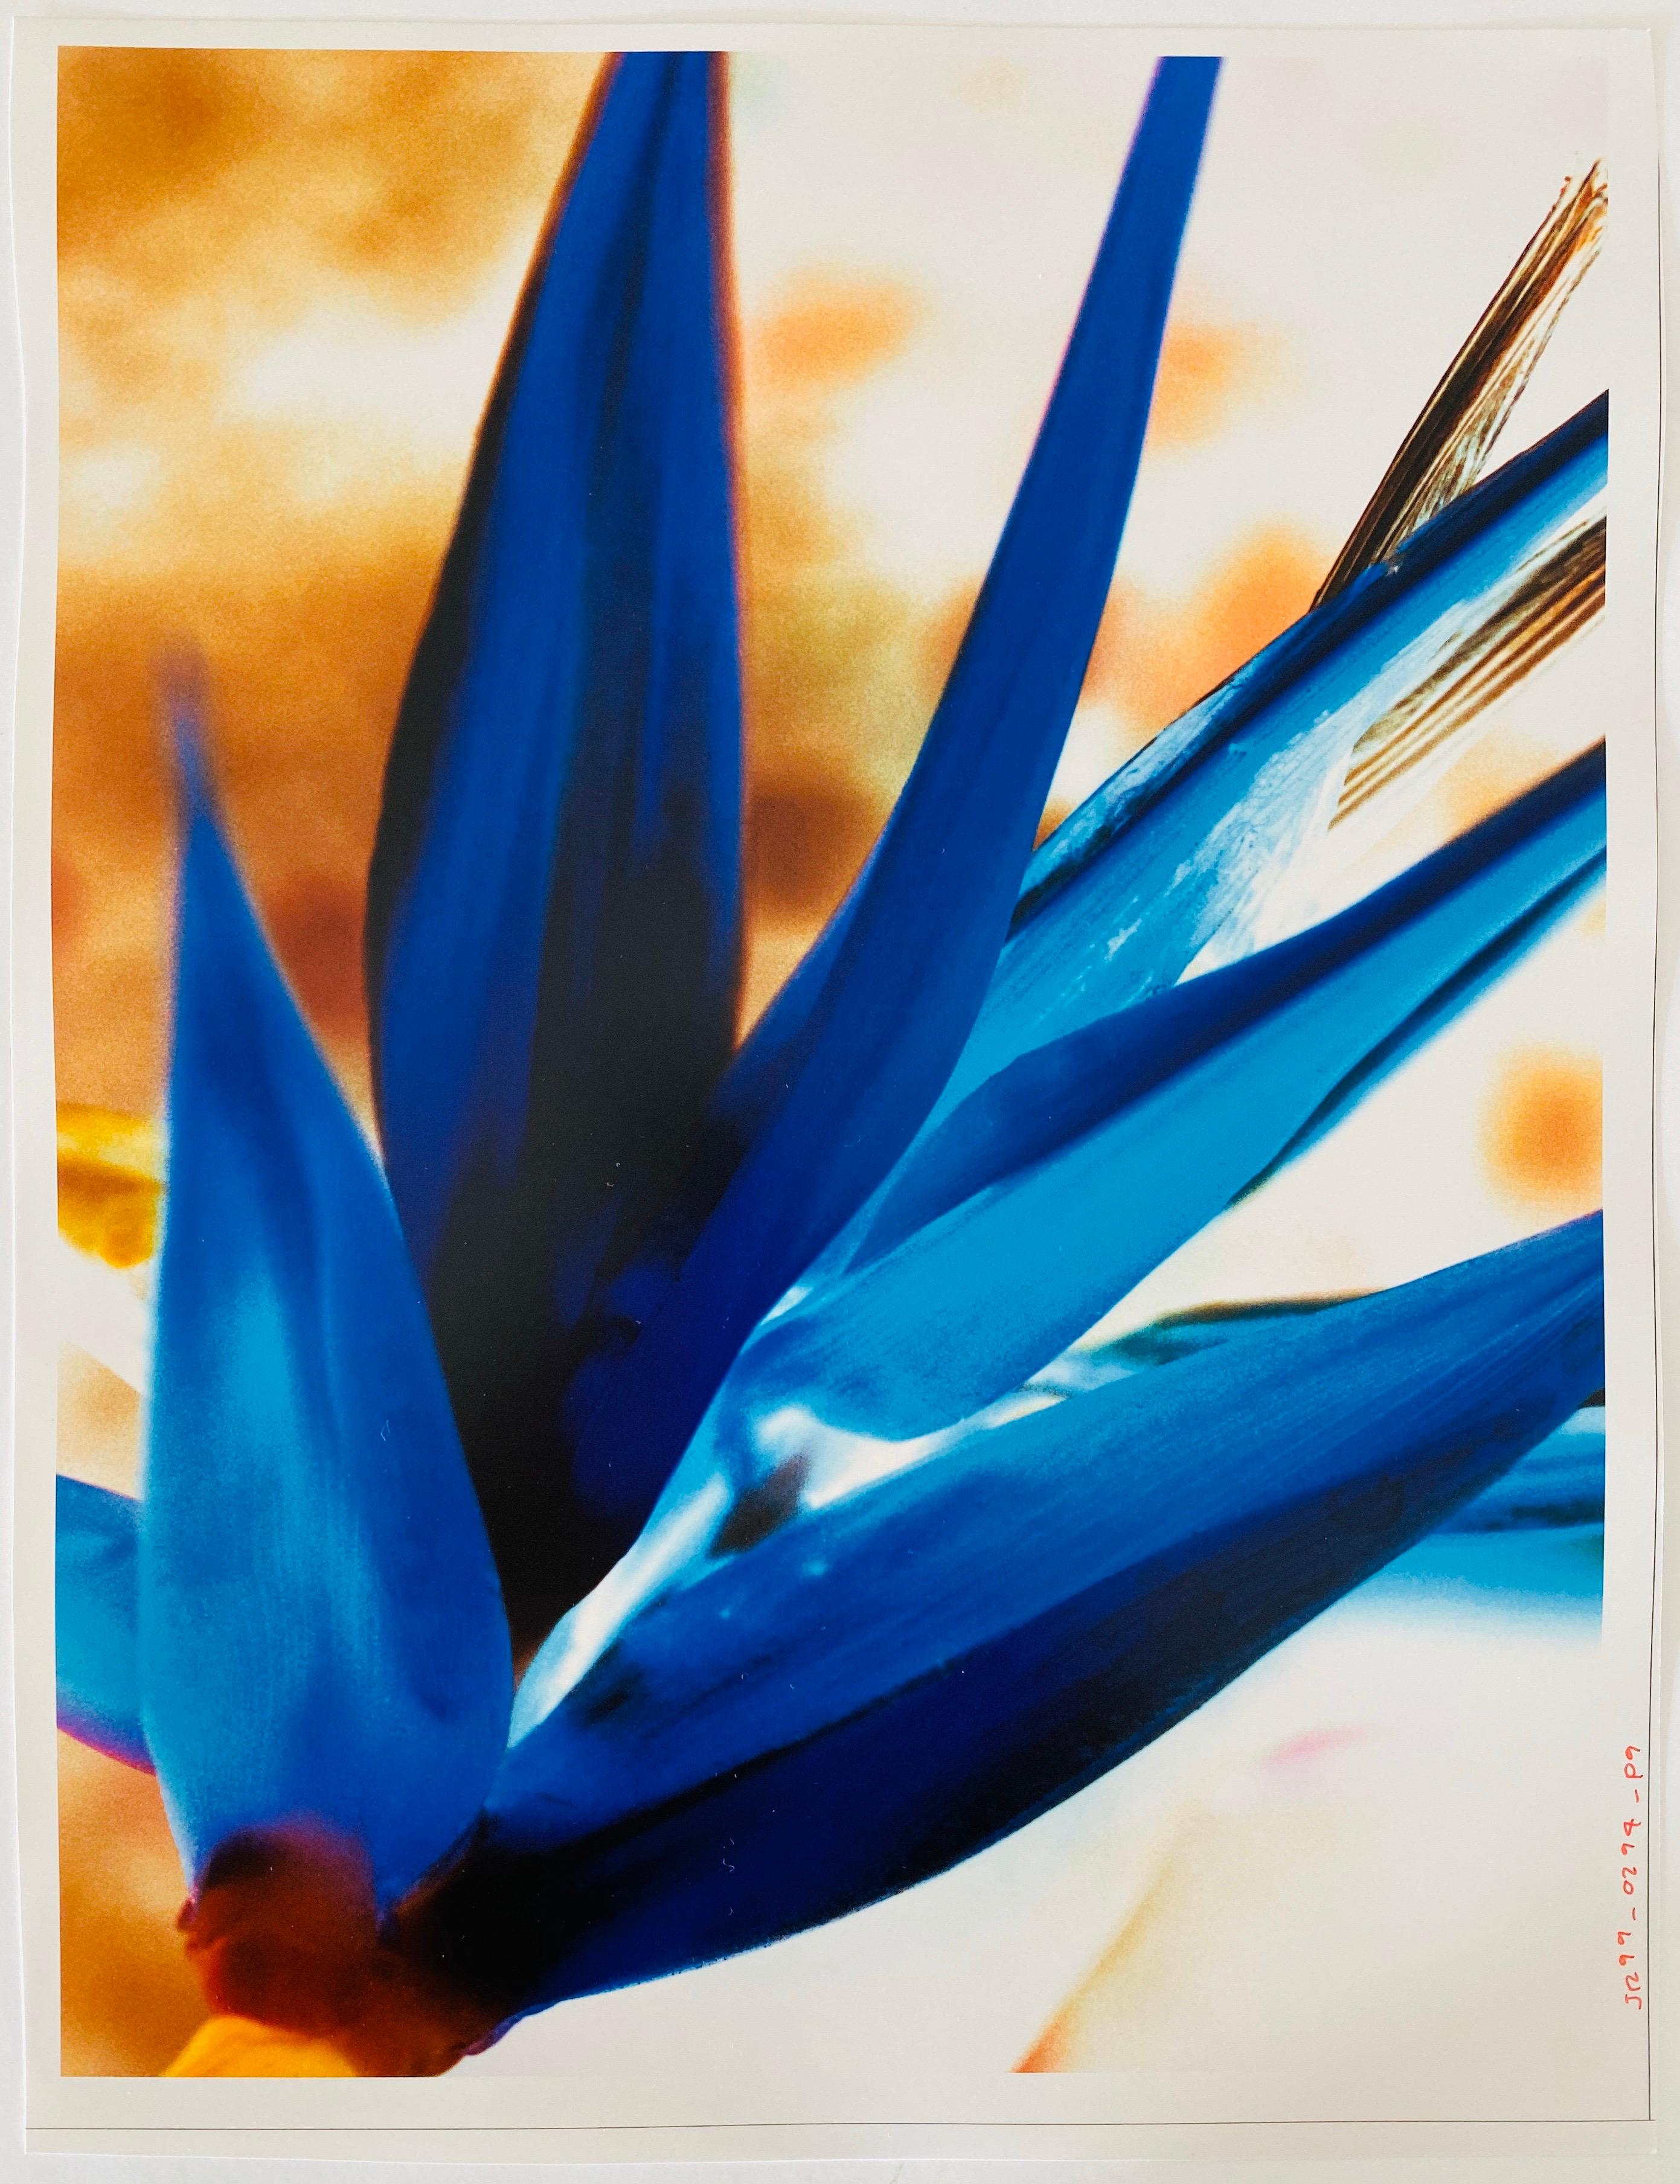 FLORA & FAUNA SERIES, ca. 1998, Fuji Kristall-Archivpapier. Nicht signiert.

Der Fotograf Jeffrey Rothstein konzentriert sich bei seinen Motiven auf verschiedene Elemente der Natur, die von Blumen und Pflanzen über Wüstensand bis hin zum Meer und